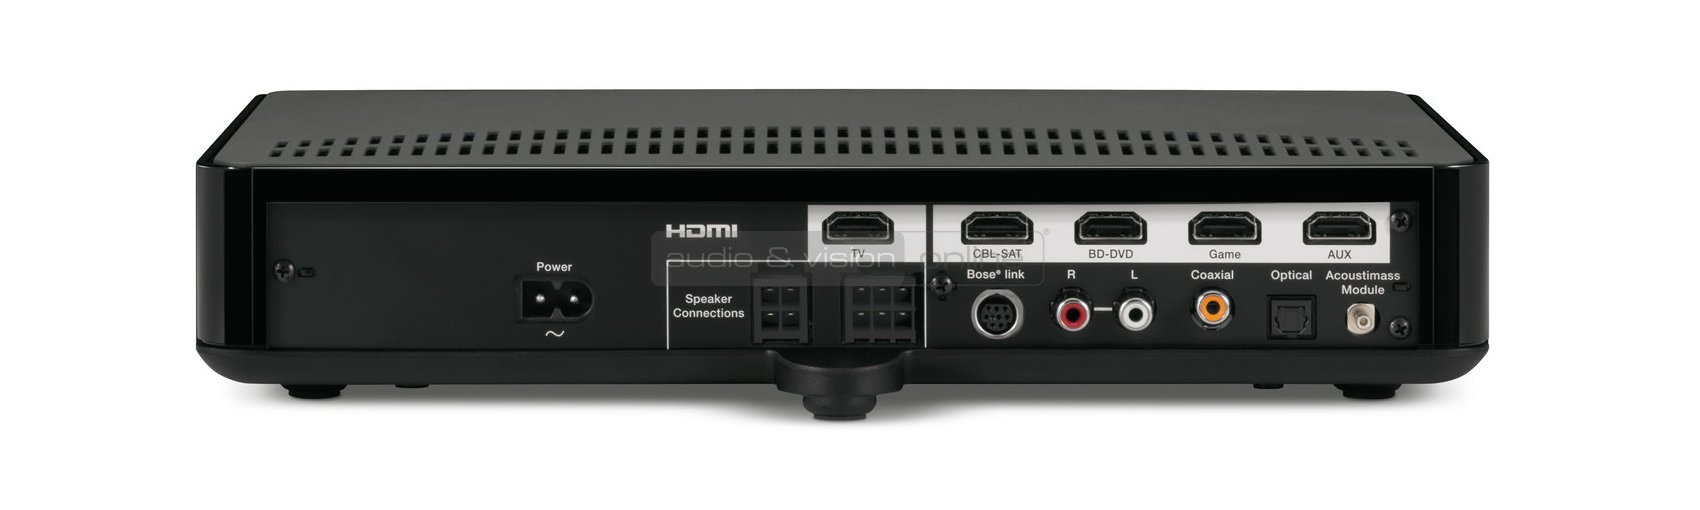 Bose CineMate 520 házimozi rendszer központi vezérlő egység